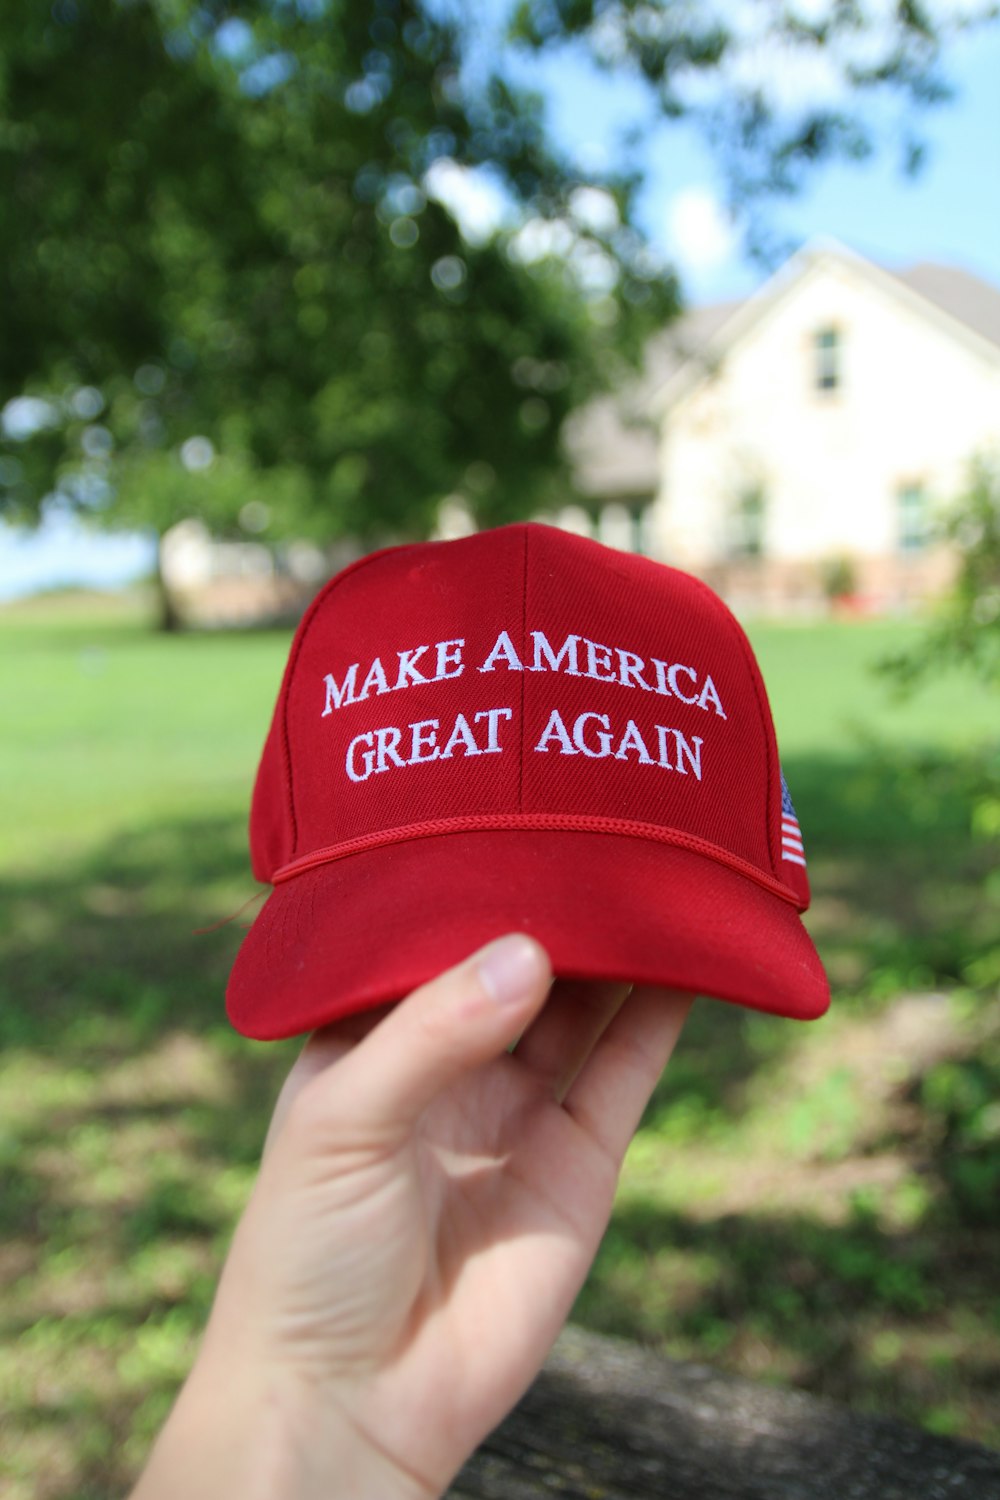 Una persona sosteniendo un sombrero rojo que dice Make America Great Again